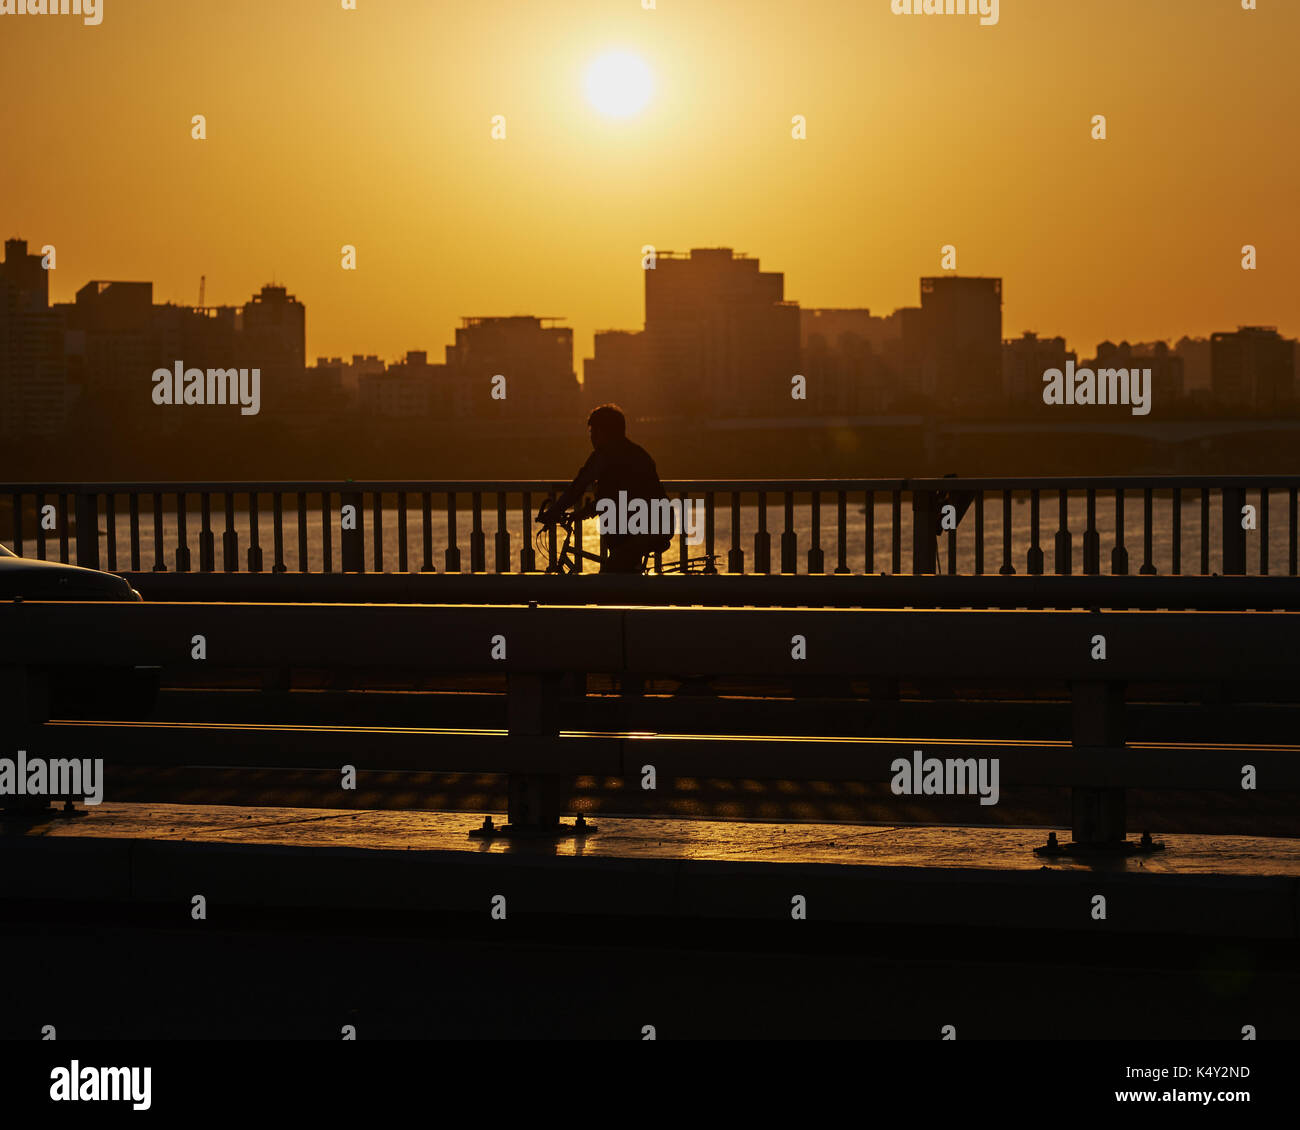 Seul, Repubblica di Corea - 27 settembre 2015: silhouette di un uomo sulla bicicletta che viaggiano sul ponte. Foto Stock